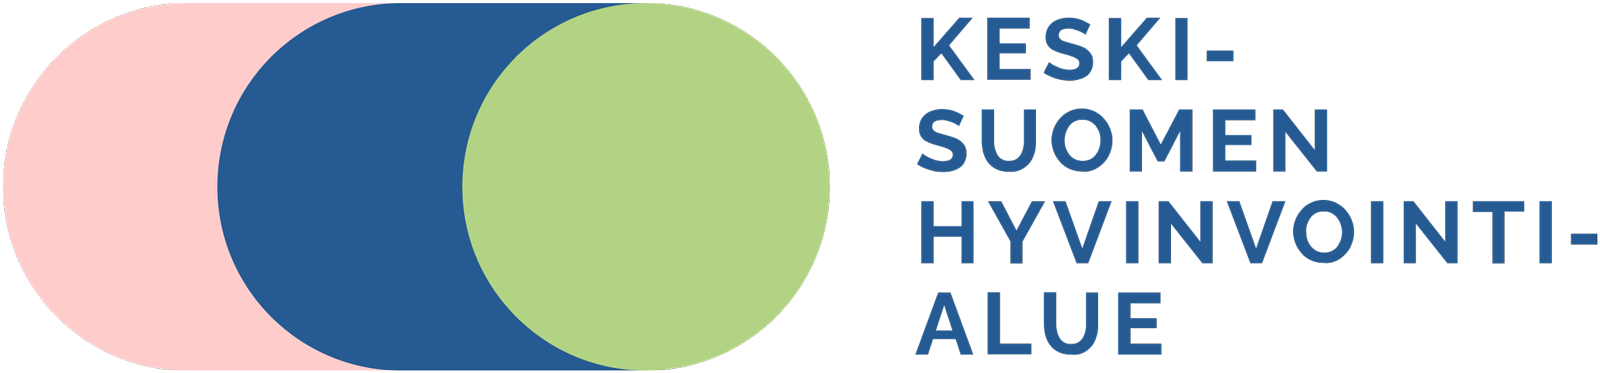 Pinkki-sini-vihreä -pallukka - Keski-Suomen hyvinvointialueen logo.